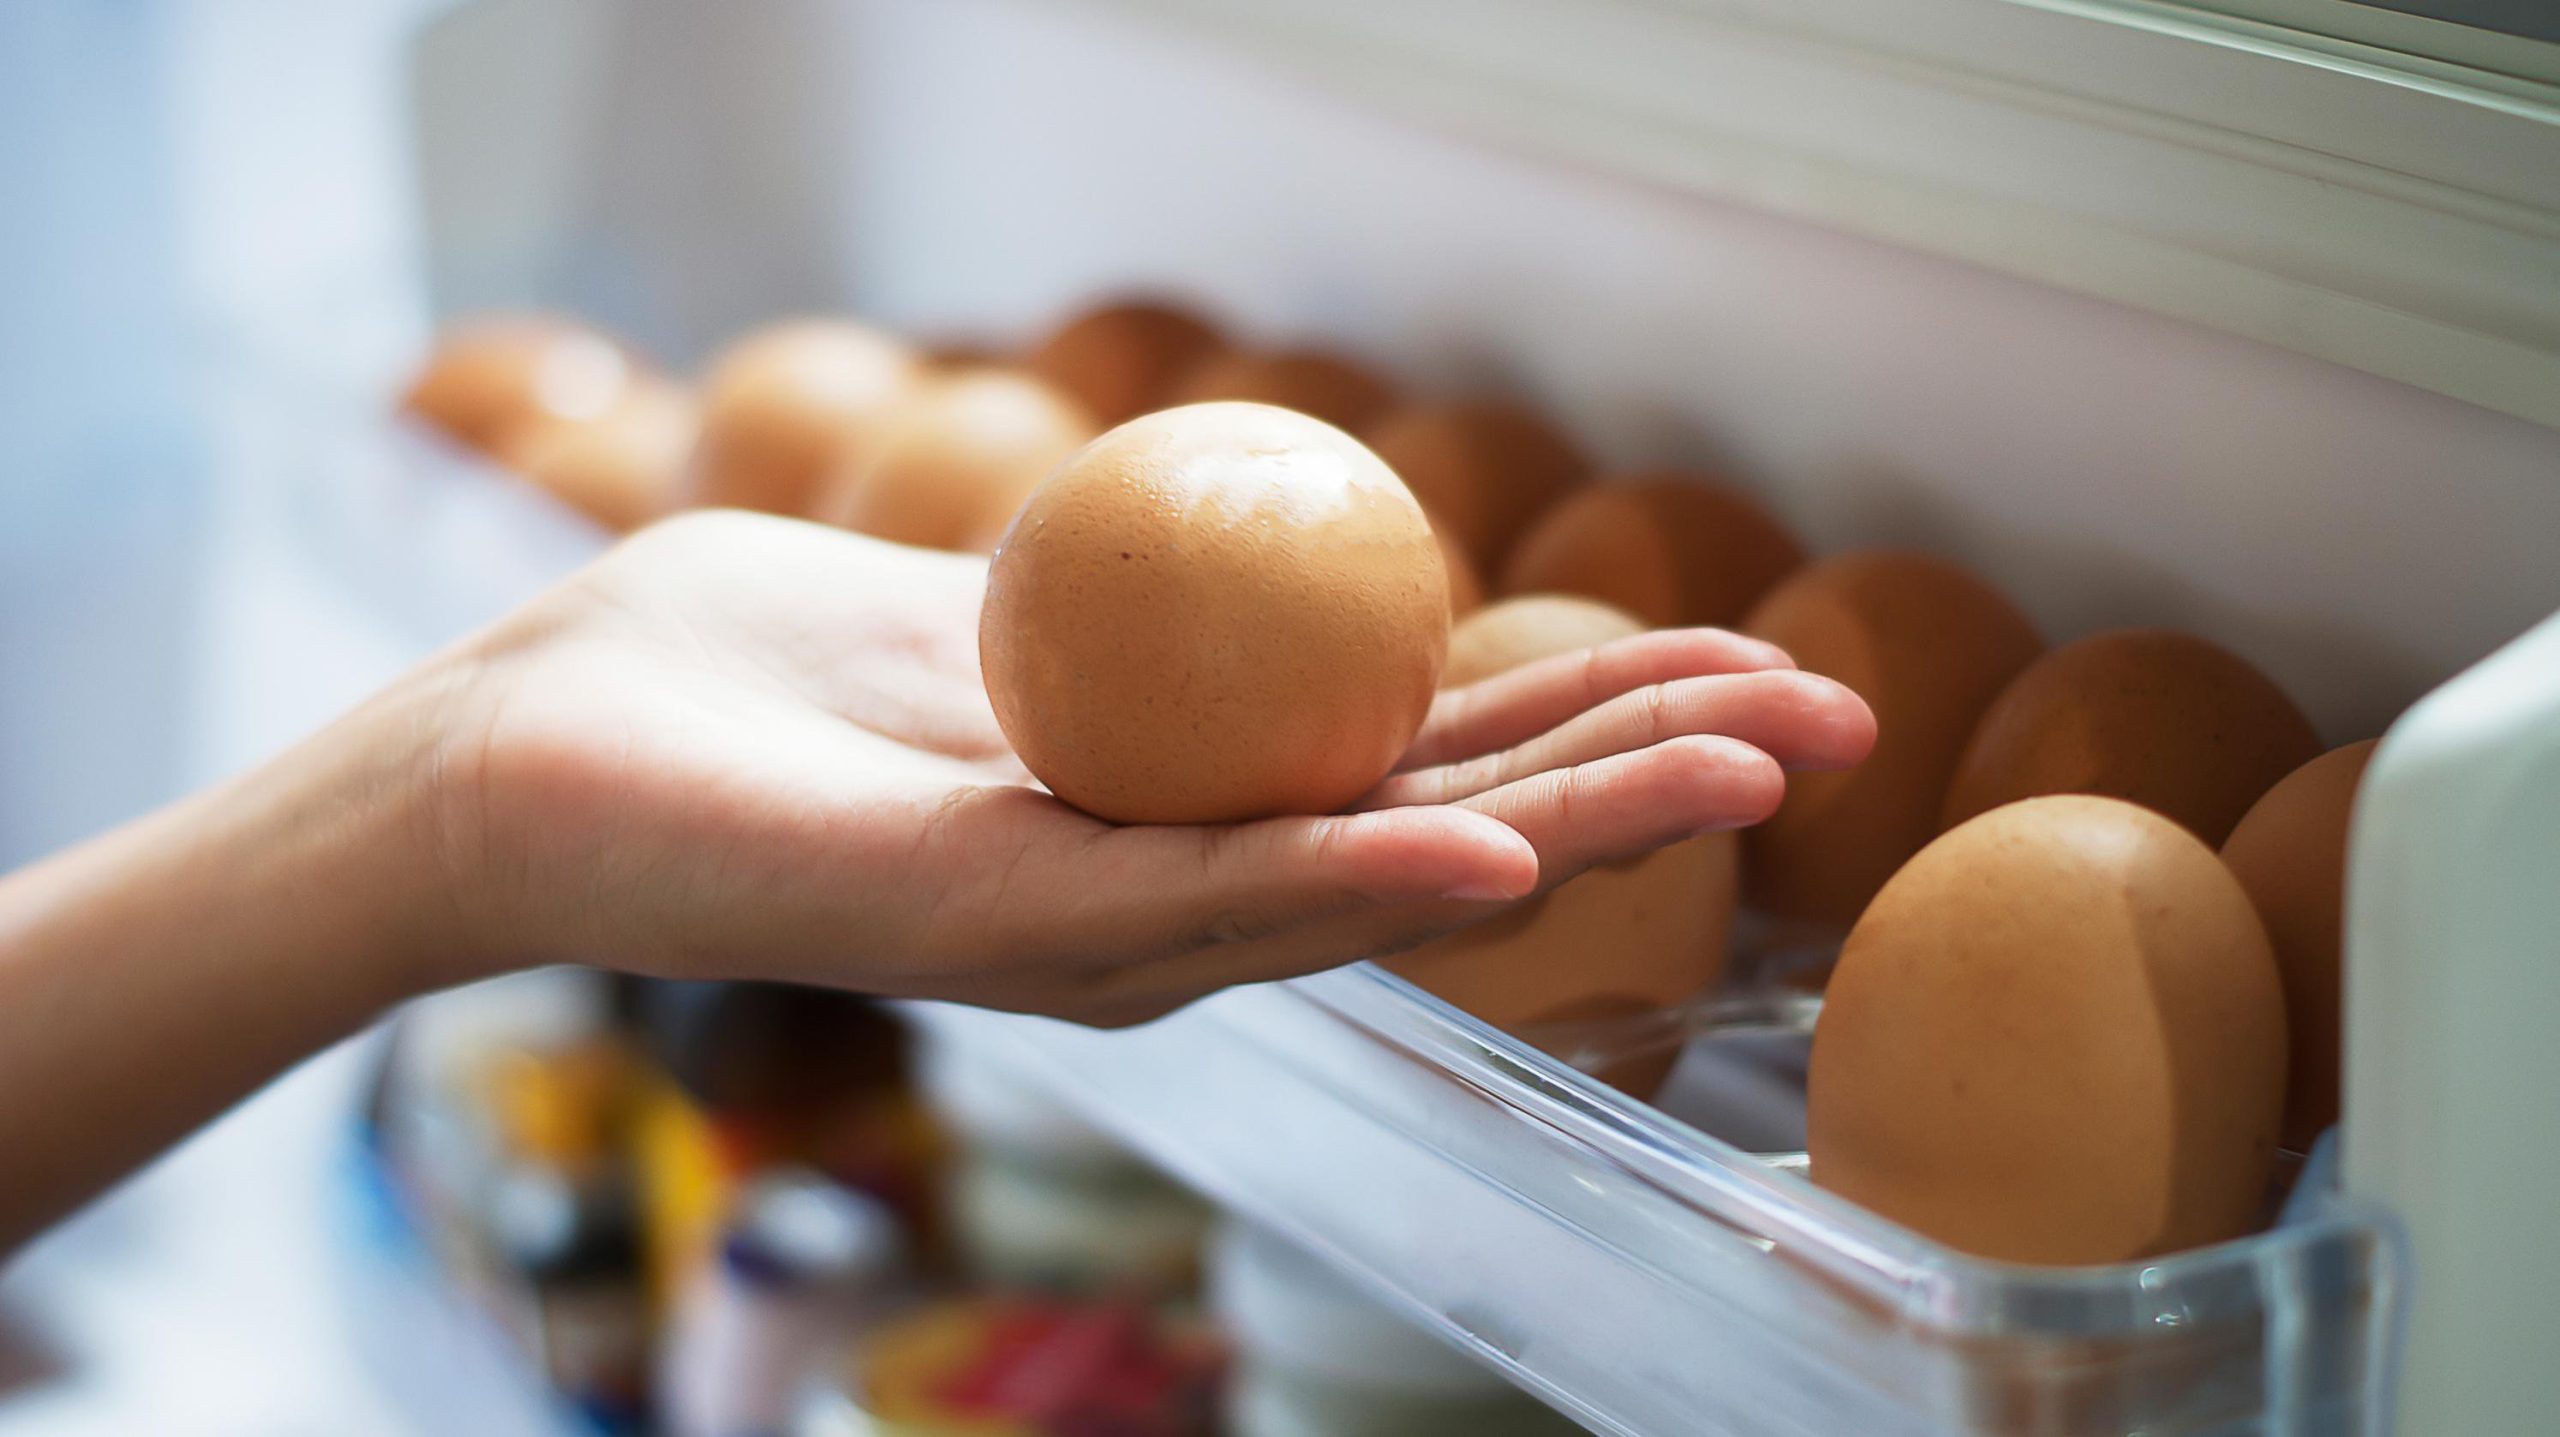 Αυτός είναι ο λόγος που δεν πρέπει να βάζετε ποτέ τα αυγά στην πόρτα του ψυγείου